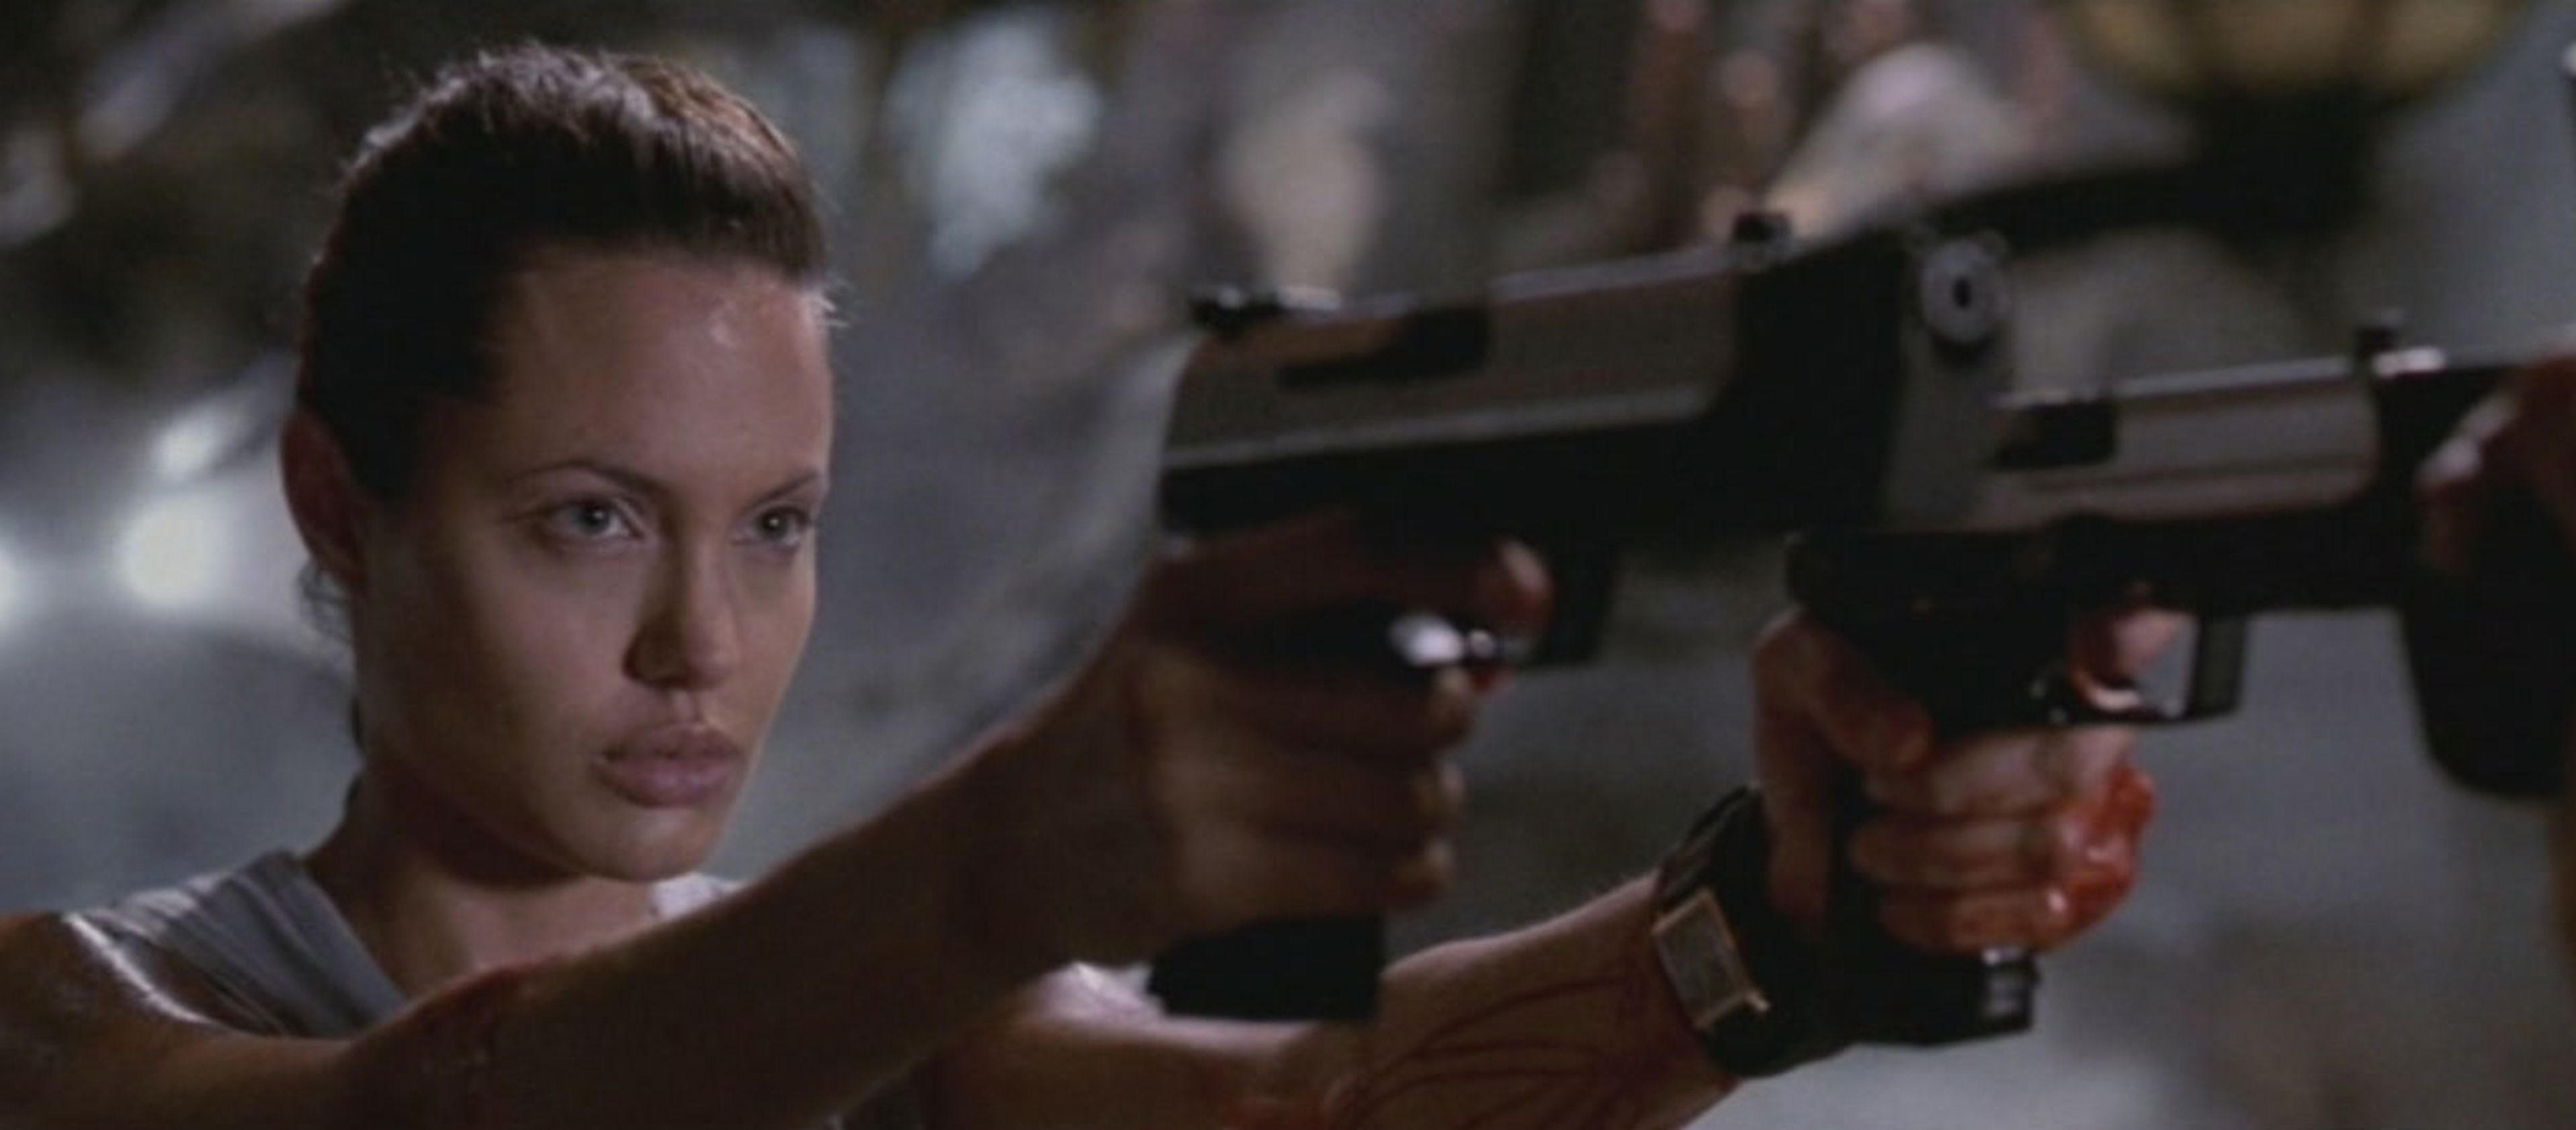 Del juego al cine: crítica de Tomb Raider